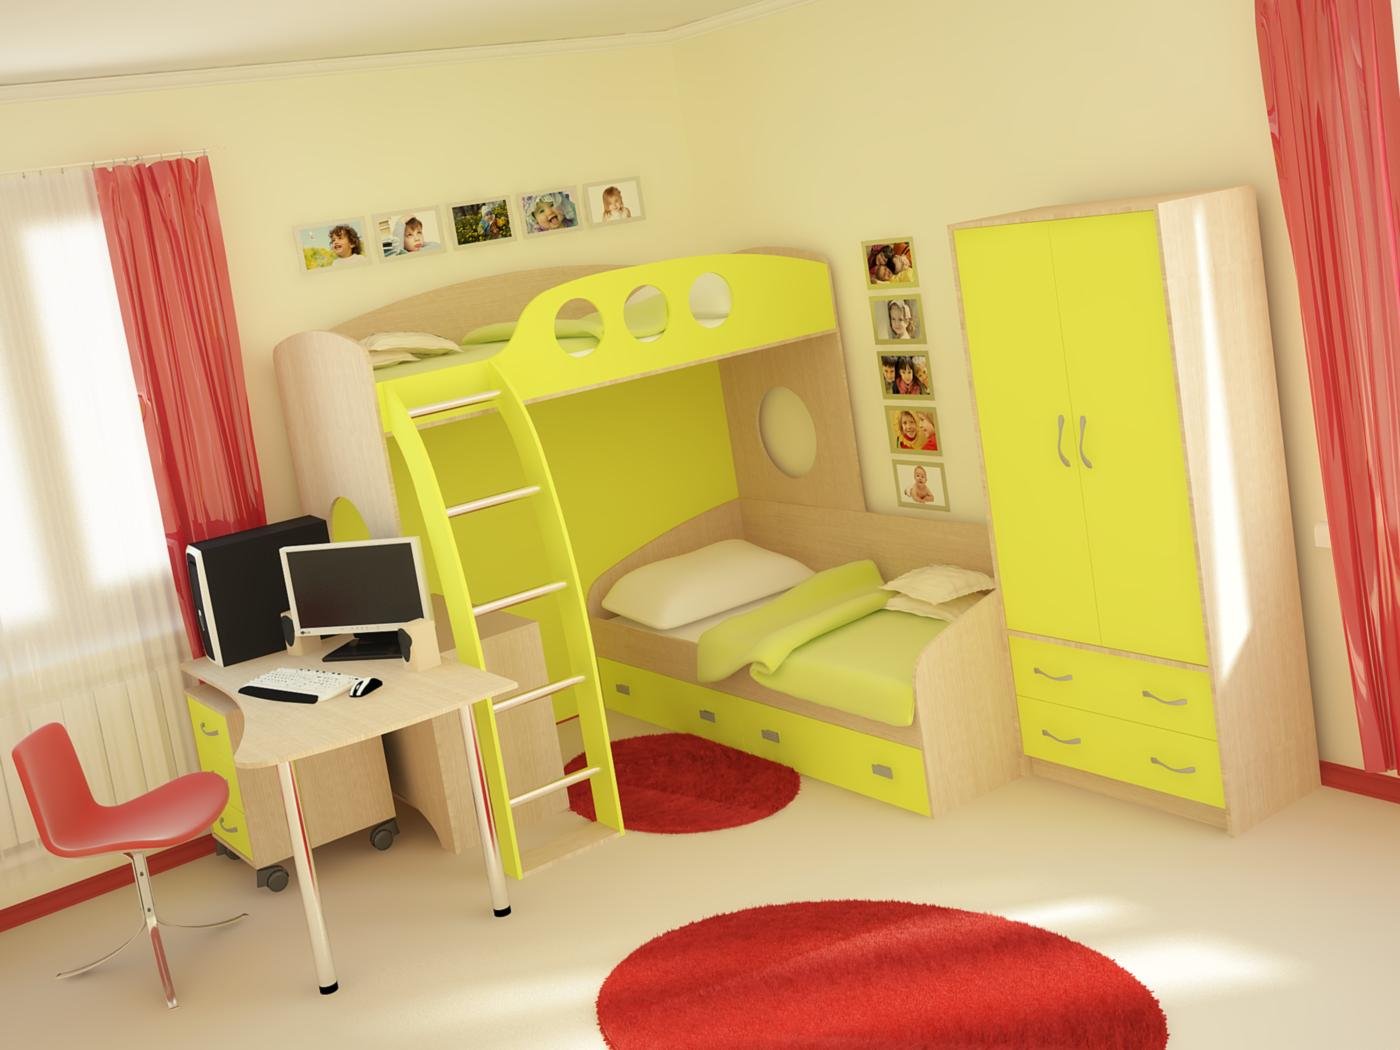 Мебель для детской комнаты для двоих. Детские комнаты. Детские спальни мебель для двоих детей. Детские спальни мебель для двоих.